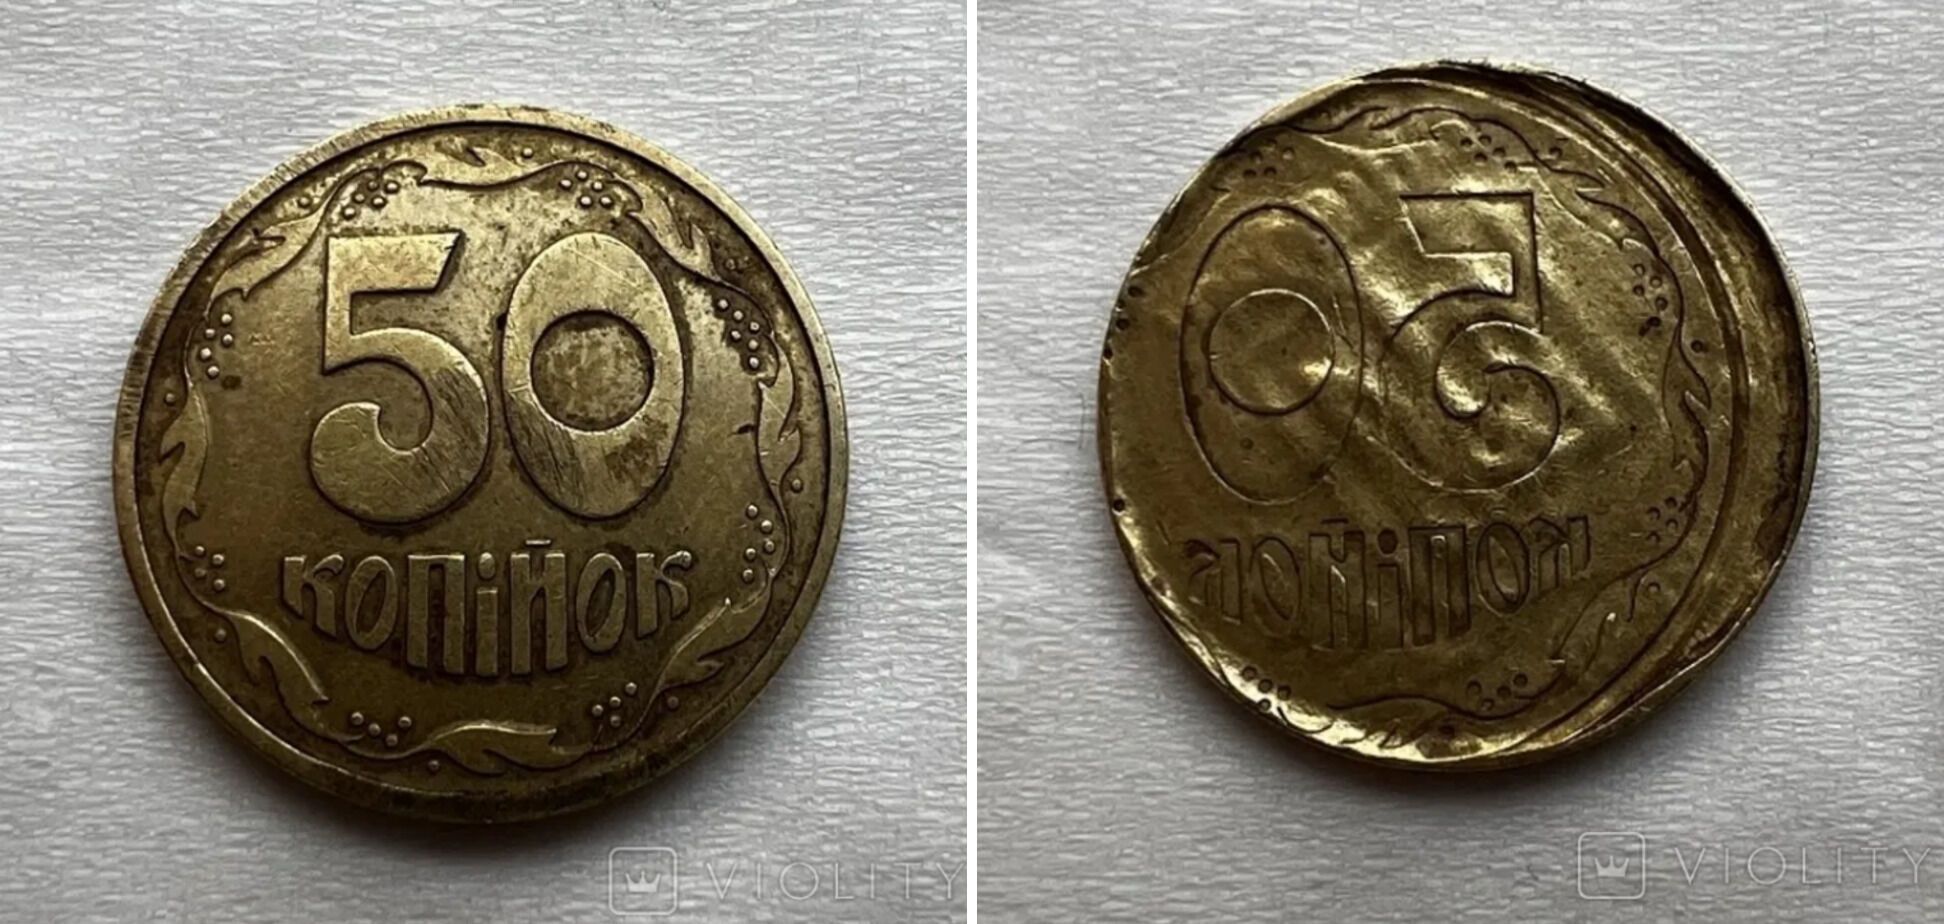 Украинские монеты с различными изъянами высоко ценятся среди коллекционеров